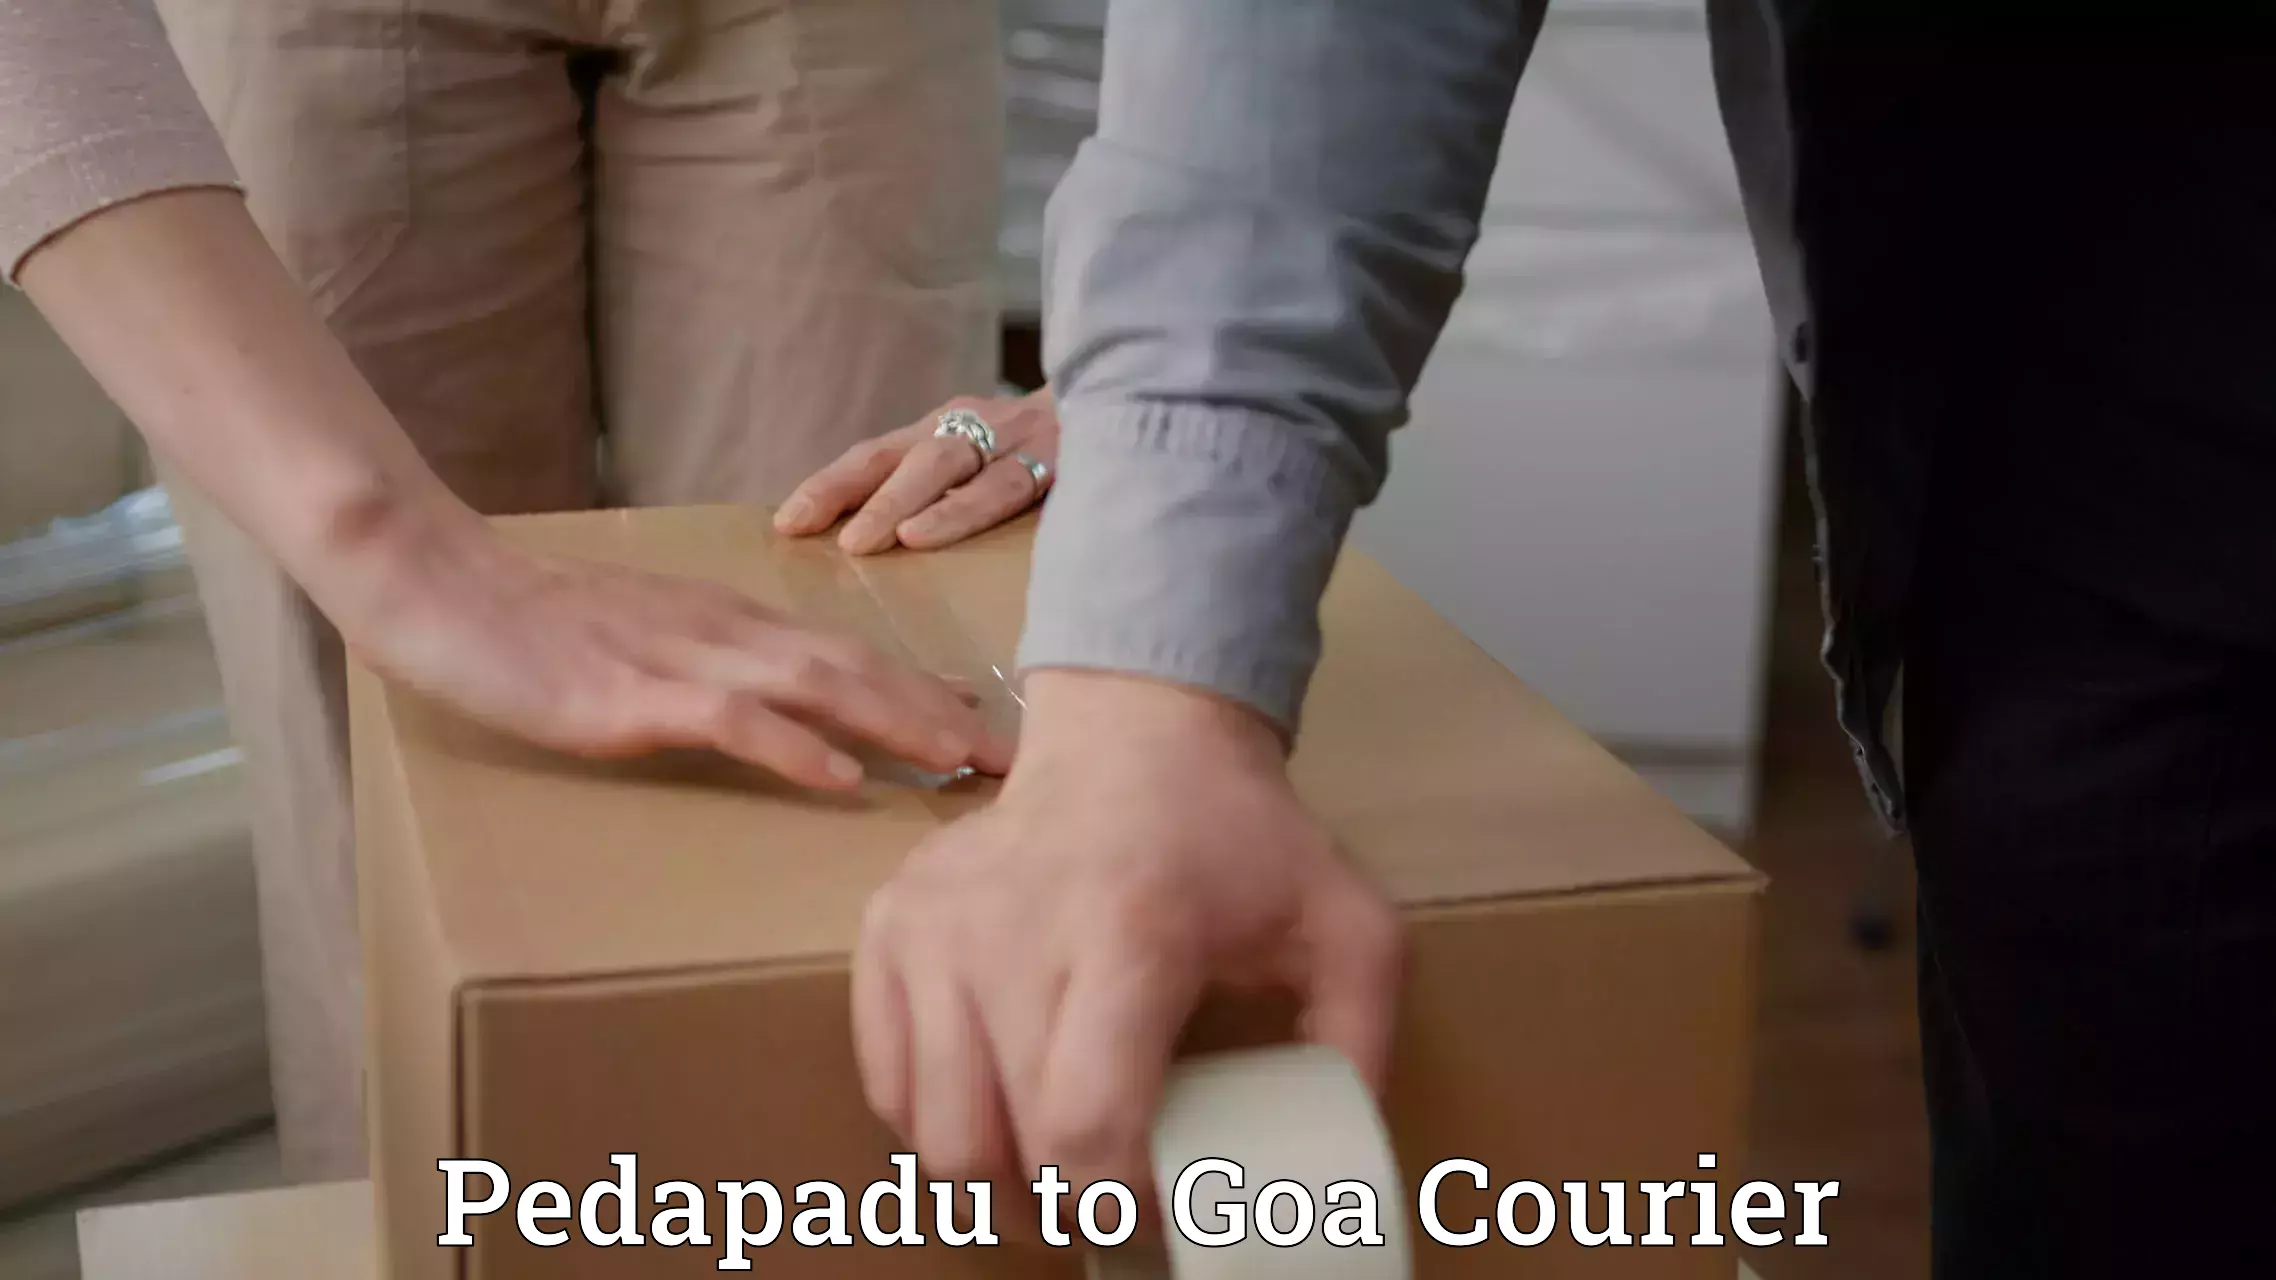 Bulk shipping discounts Pedapadu to Panaji